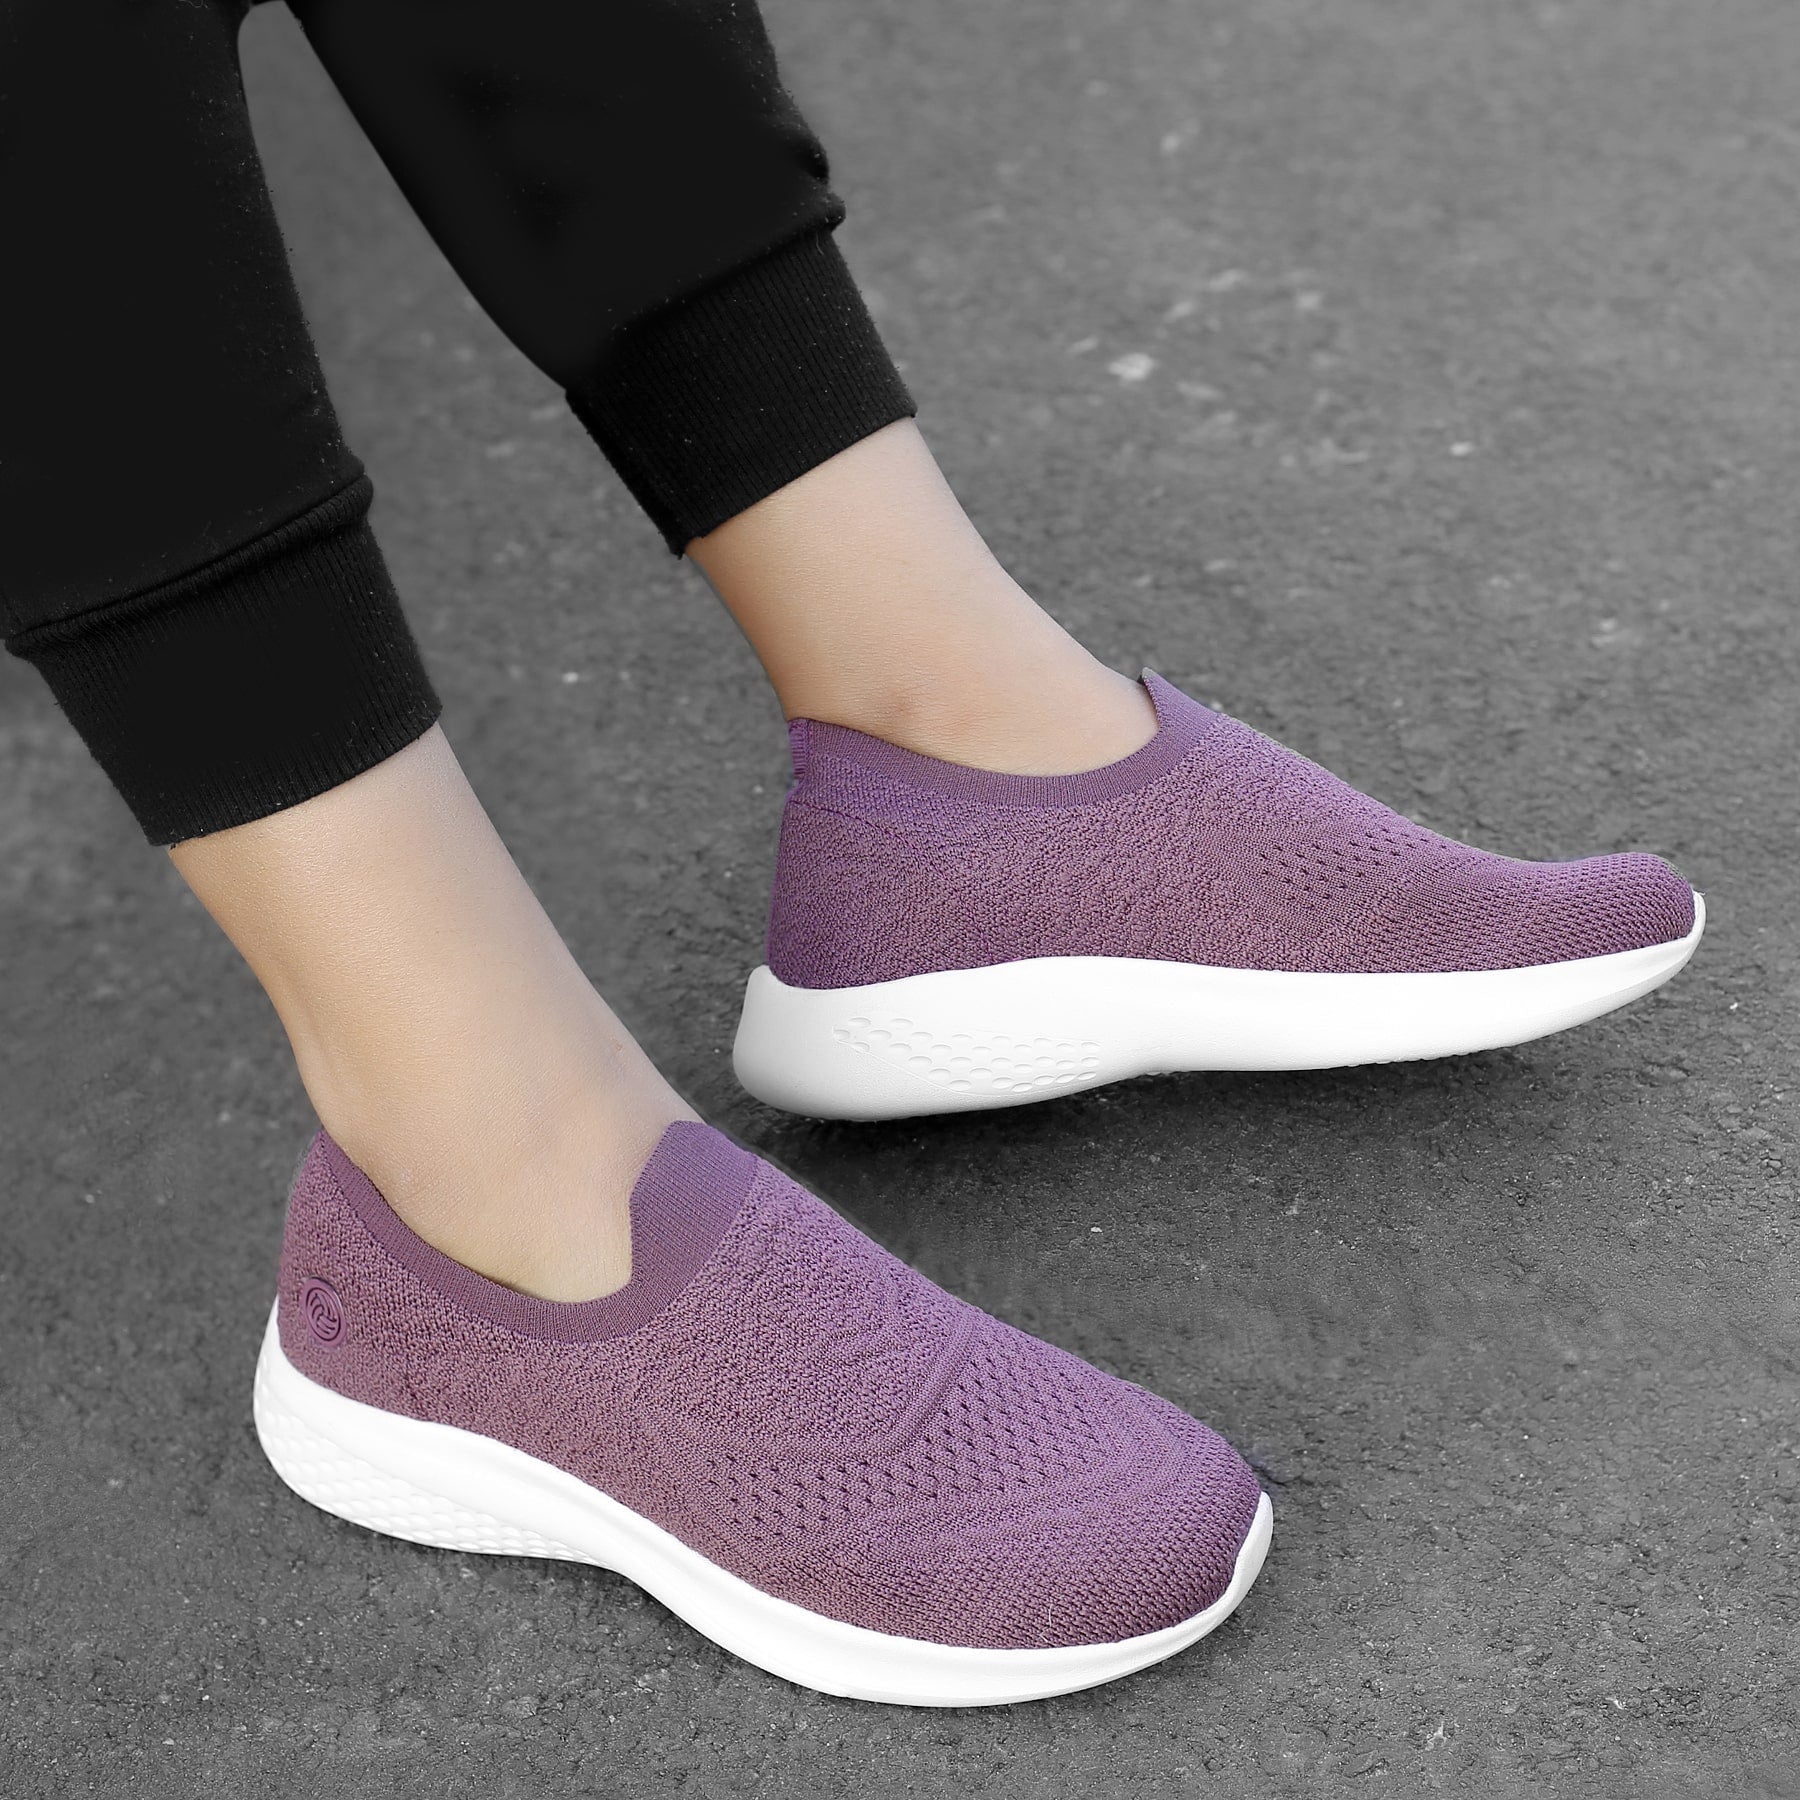 Bacca Bucci WALKER Women Slip-On Walking Mesh Sports Shoes Sneakers